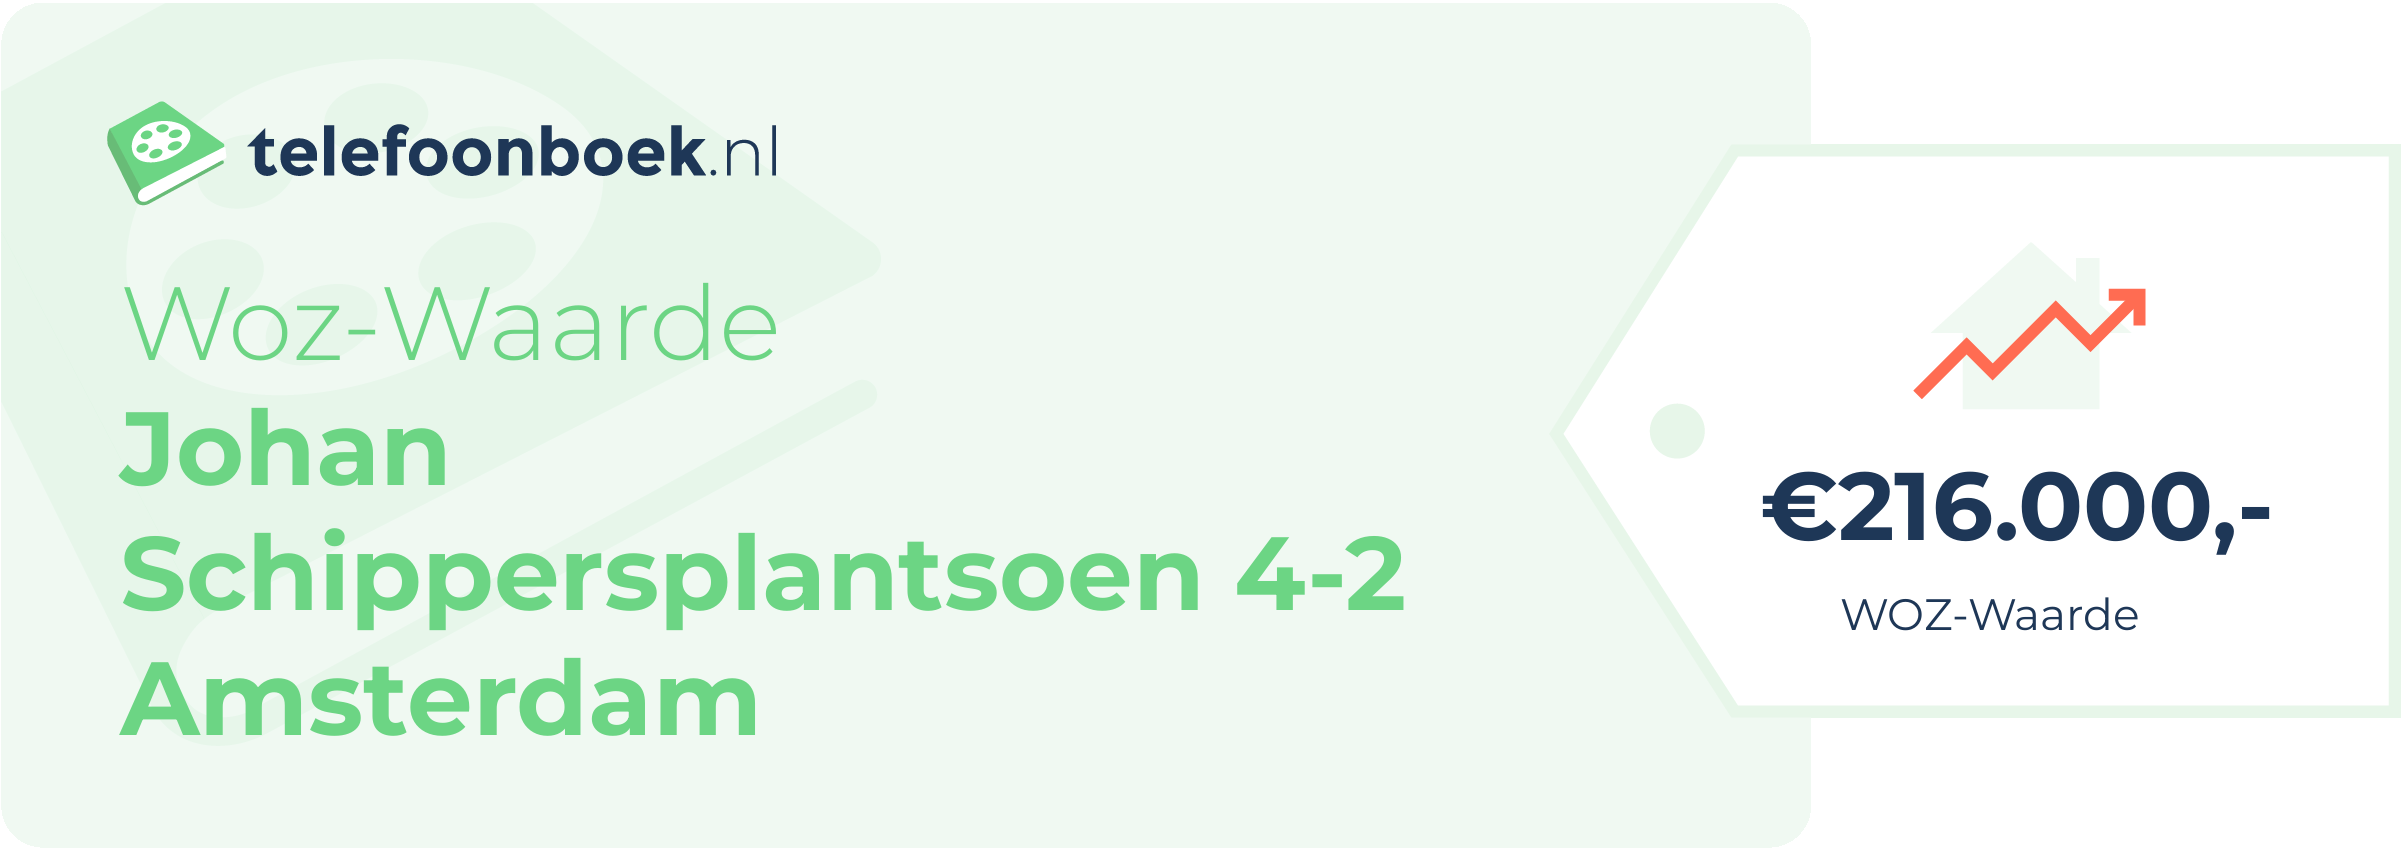 WOZ-waarde Johan Schippersplantsoen 4-2 Amsterdam